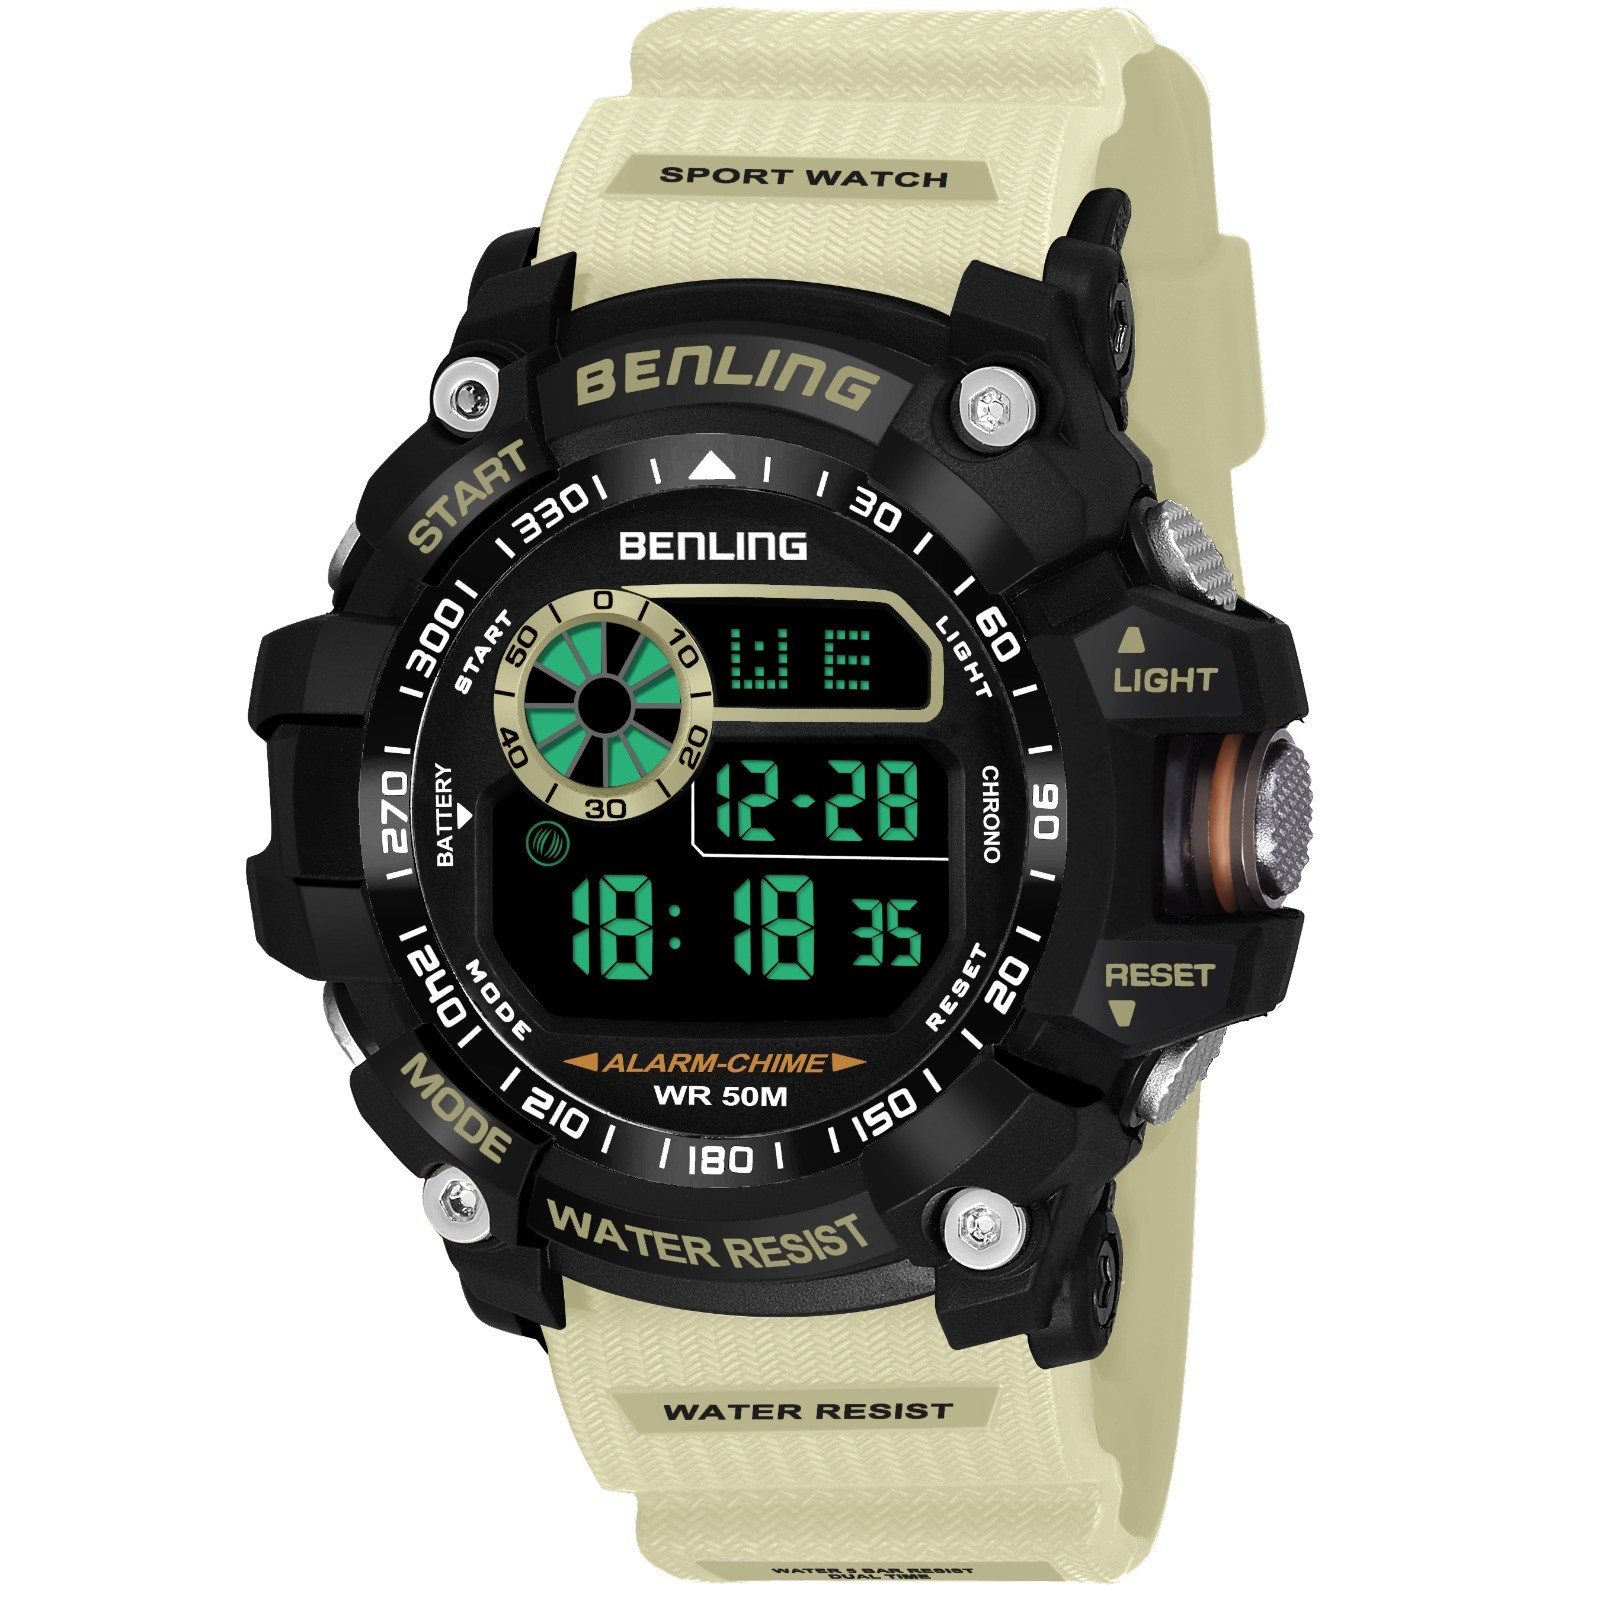 Bl-6064- Best digital watch under 1000